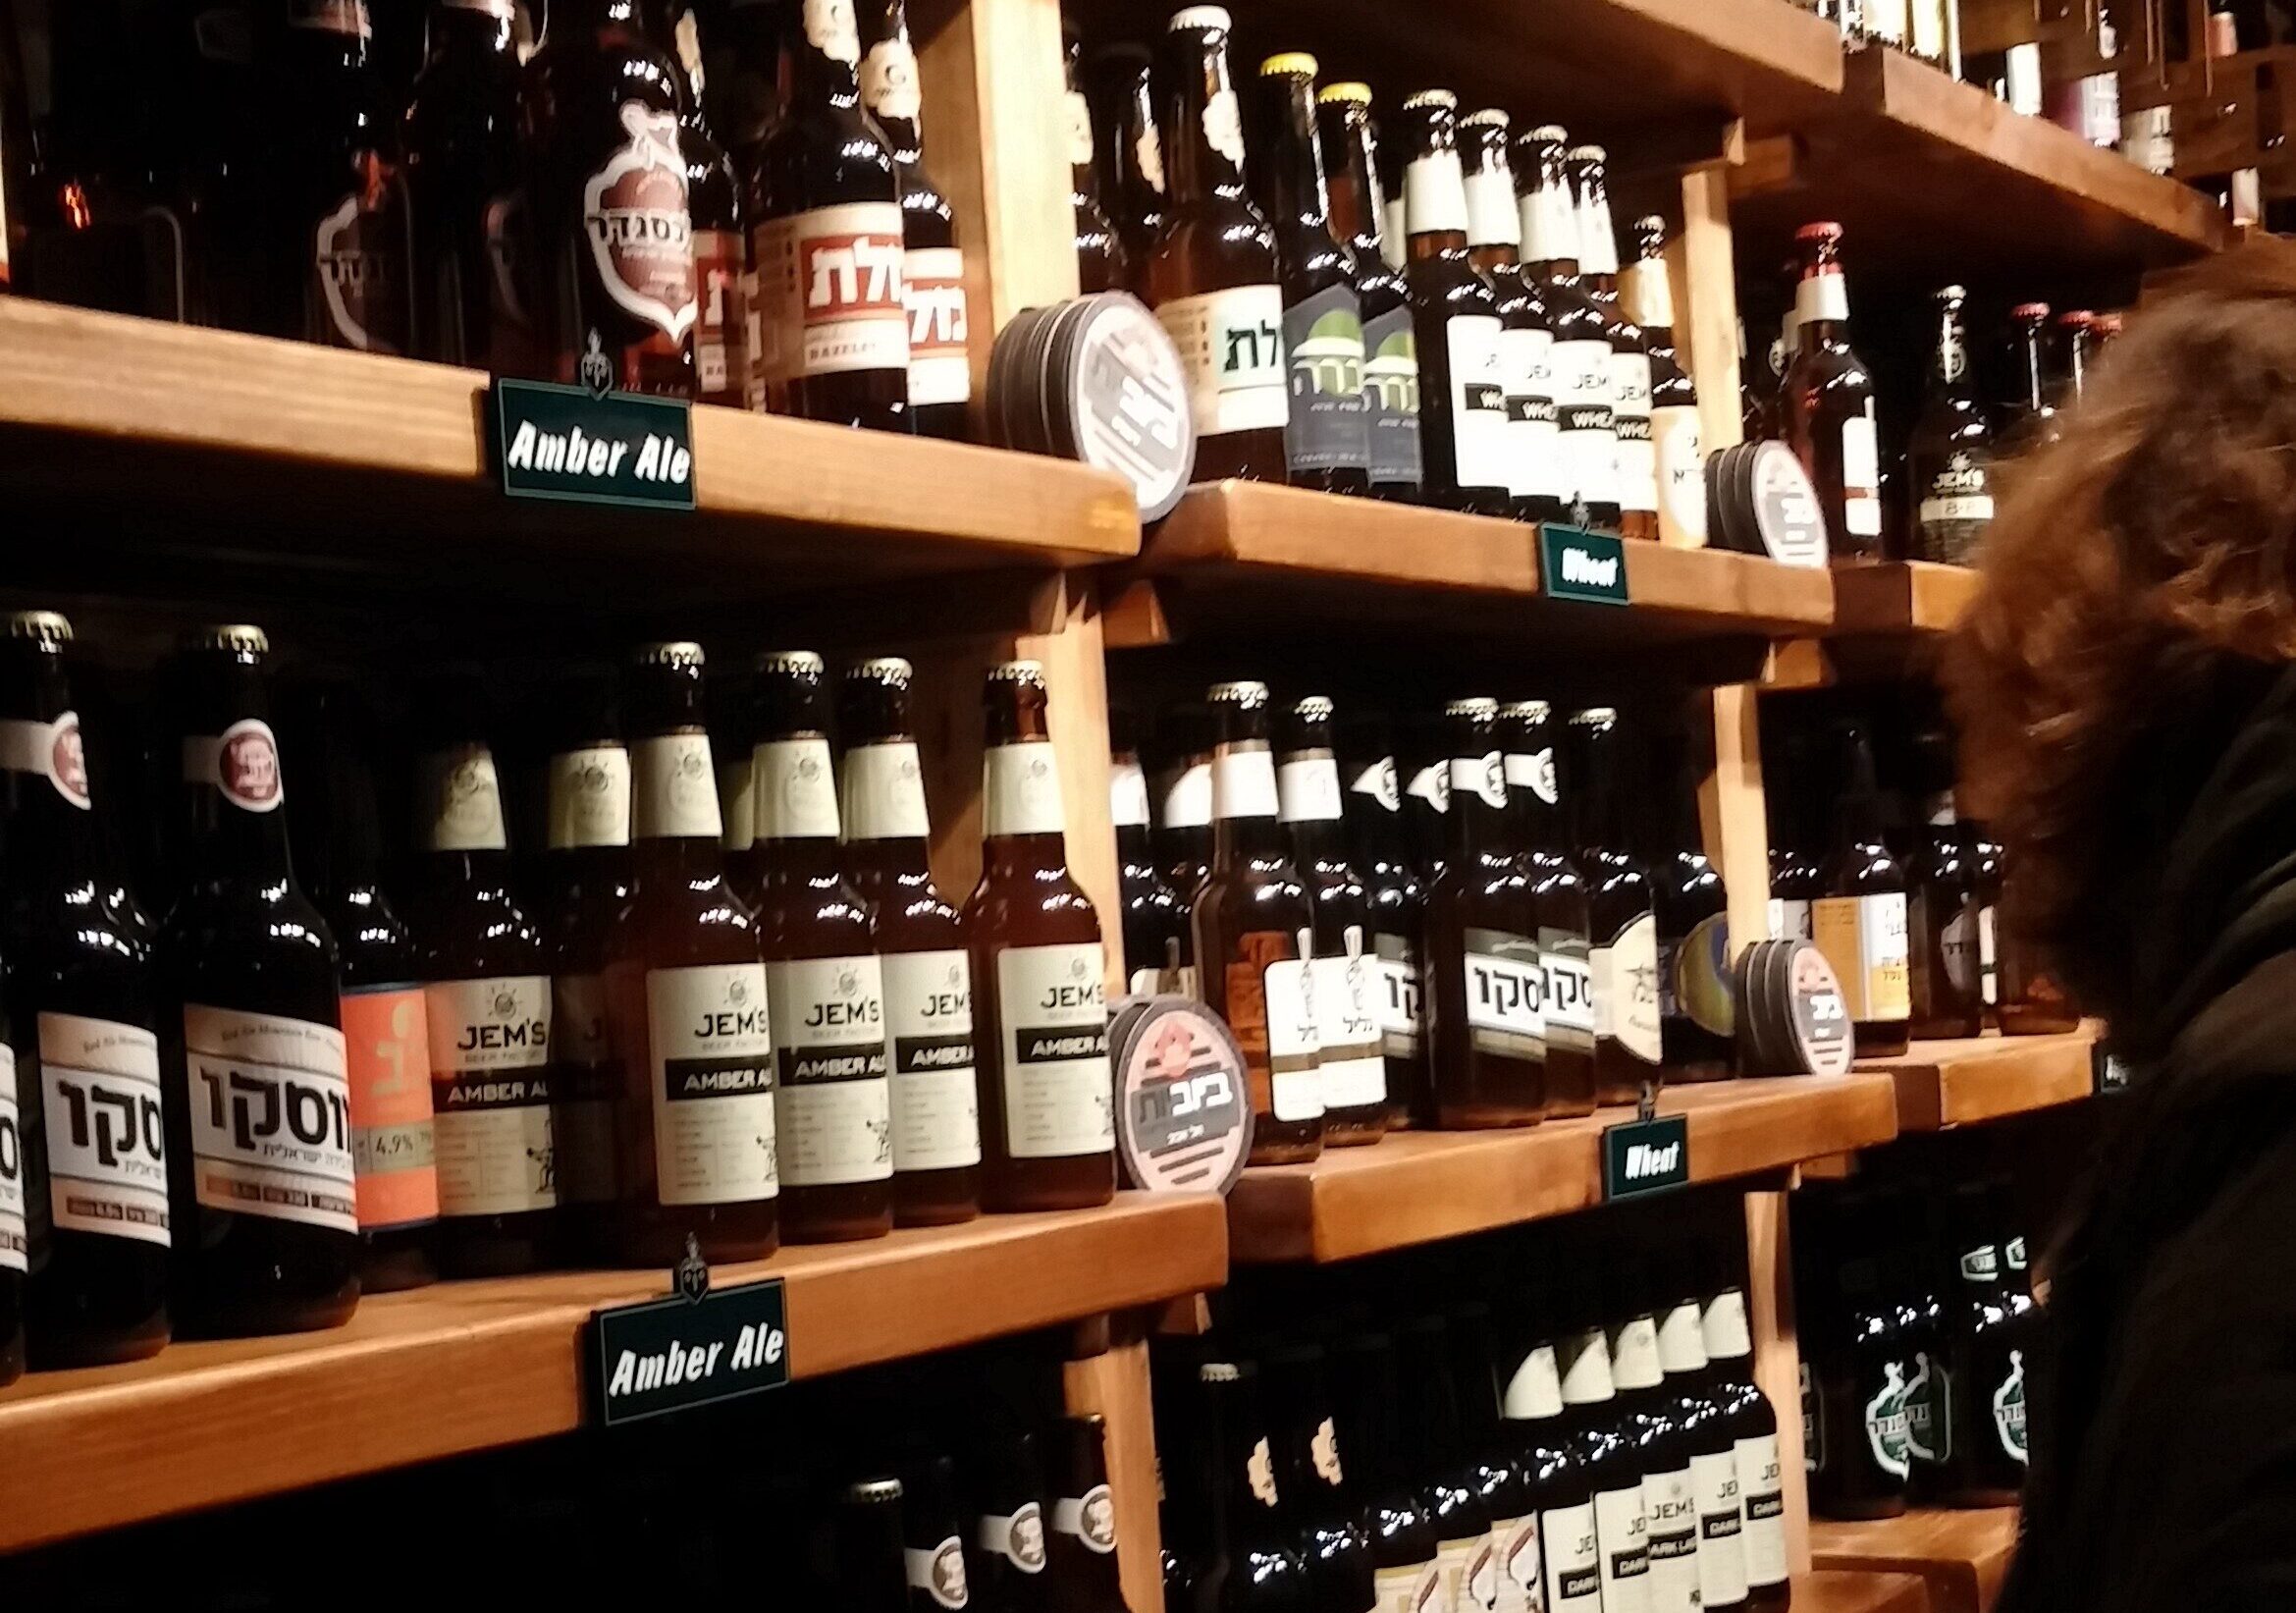 Wall of bottles of Israel Beer